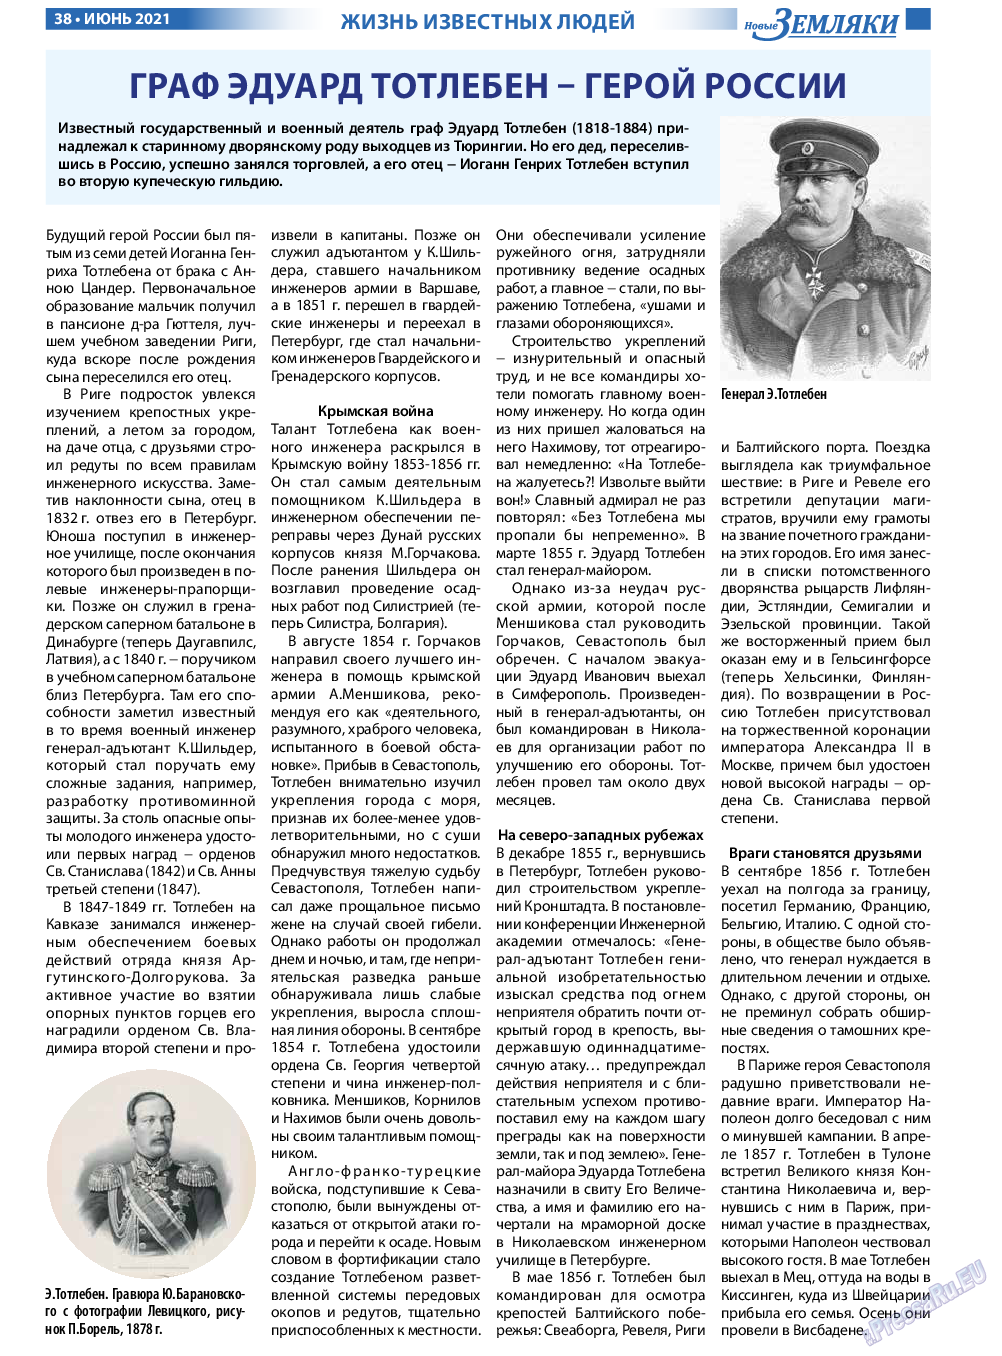 Новые Земляки, газета. 2021 №6 стр.38